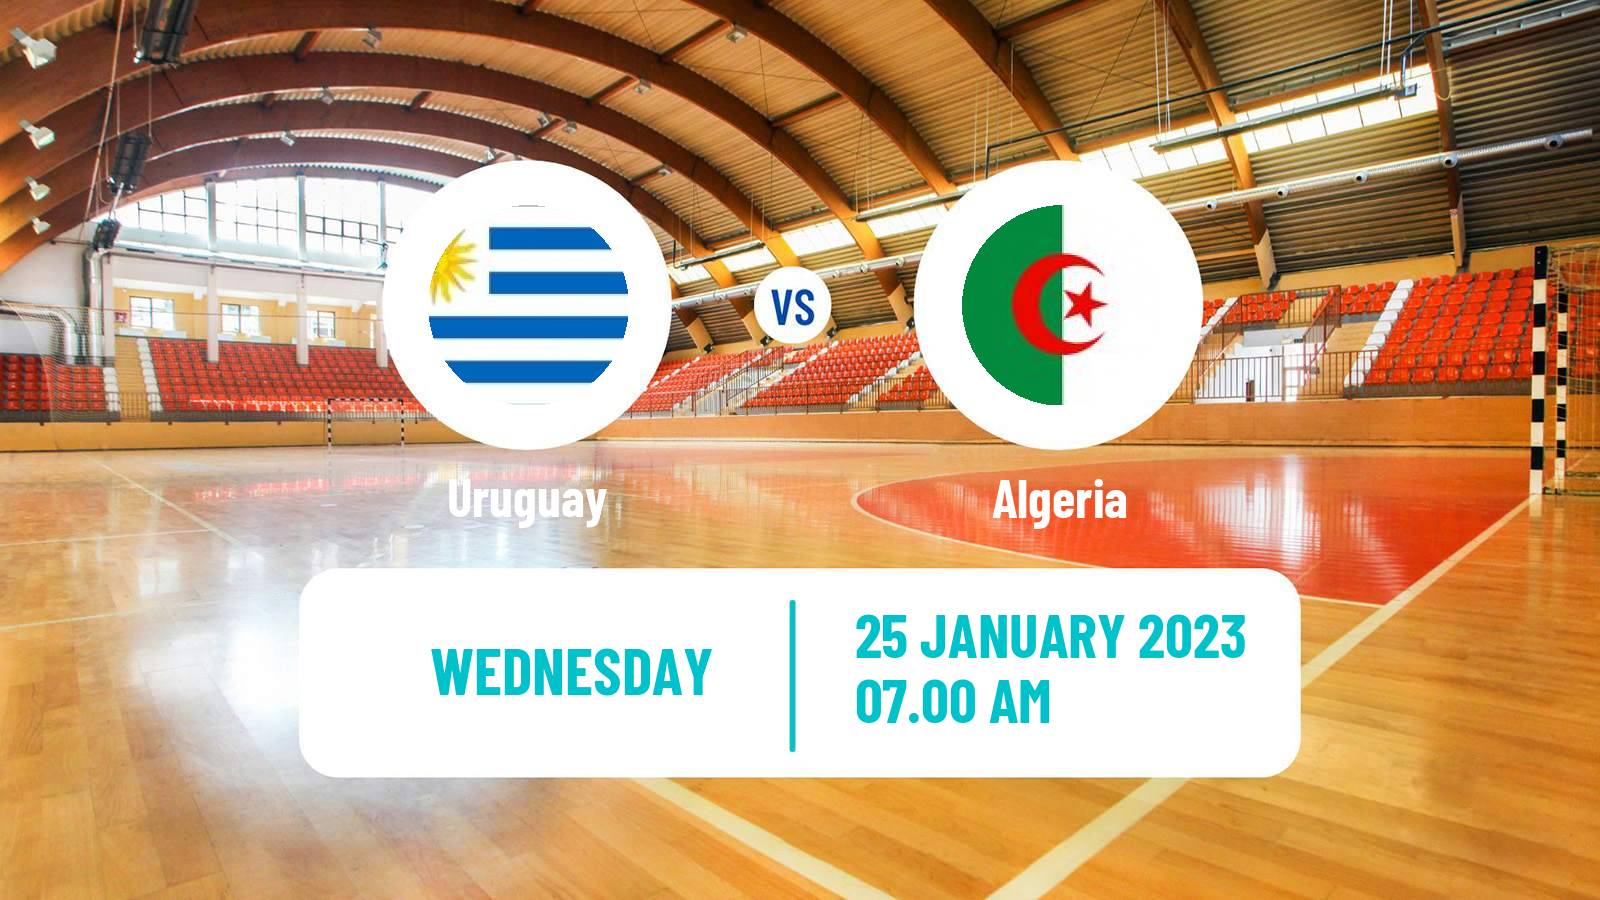 Handball Handball World Championship Uruguay - Algeria